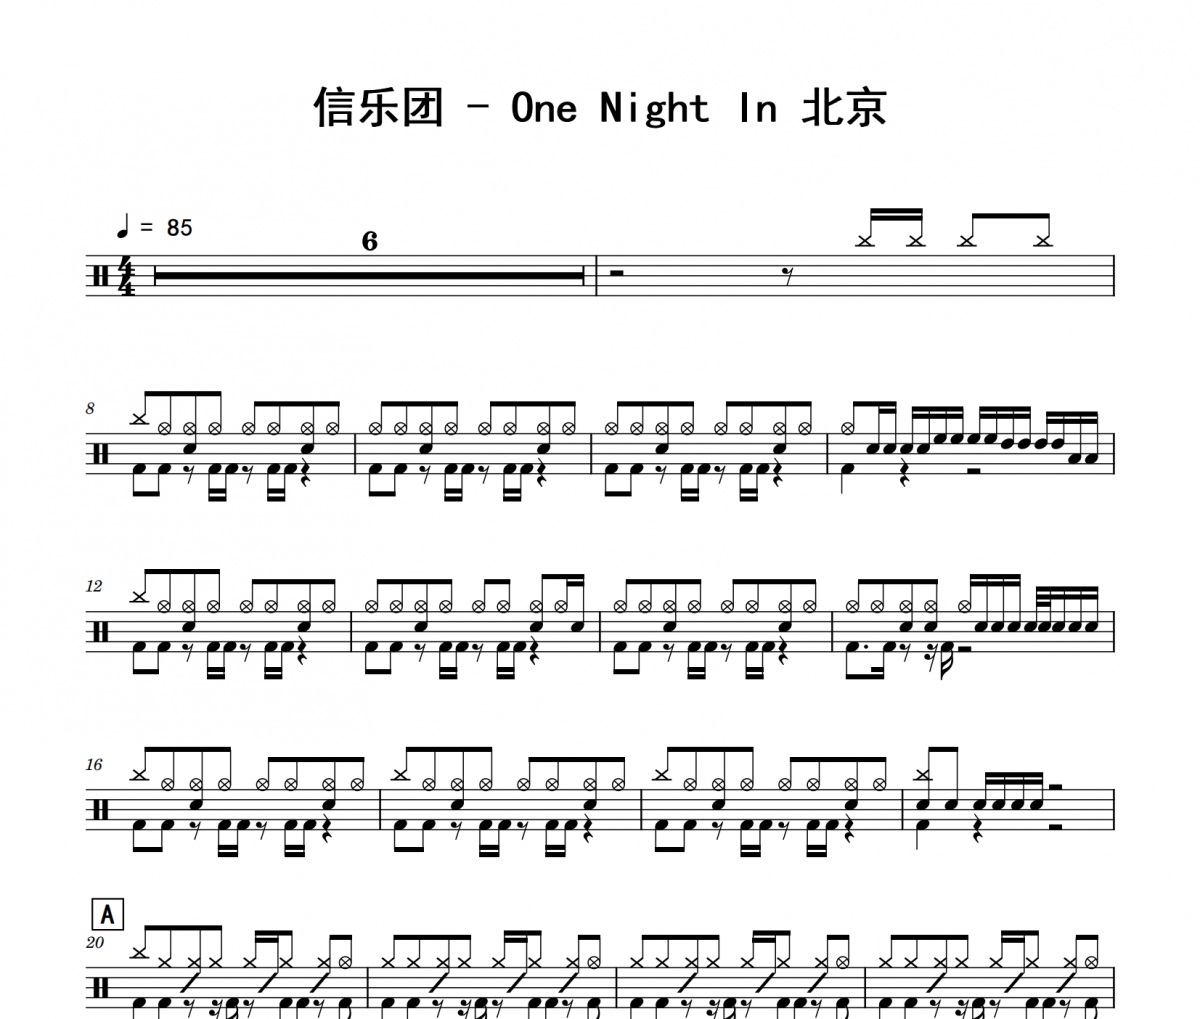 信乐团《One Night In 北京》架子鼓|爵士鼓|鼓谱